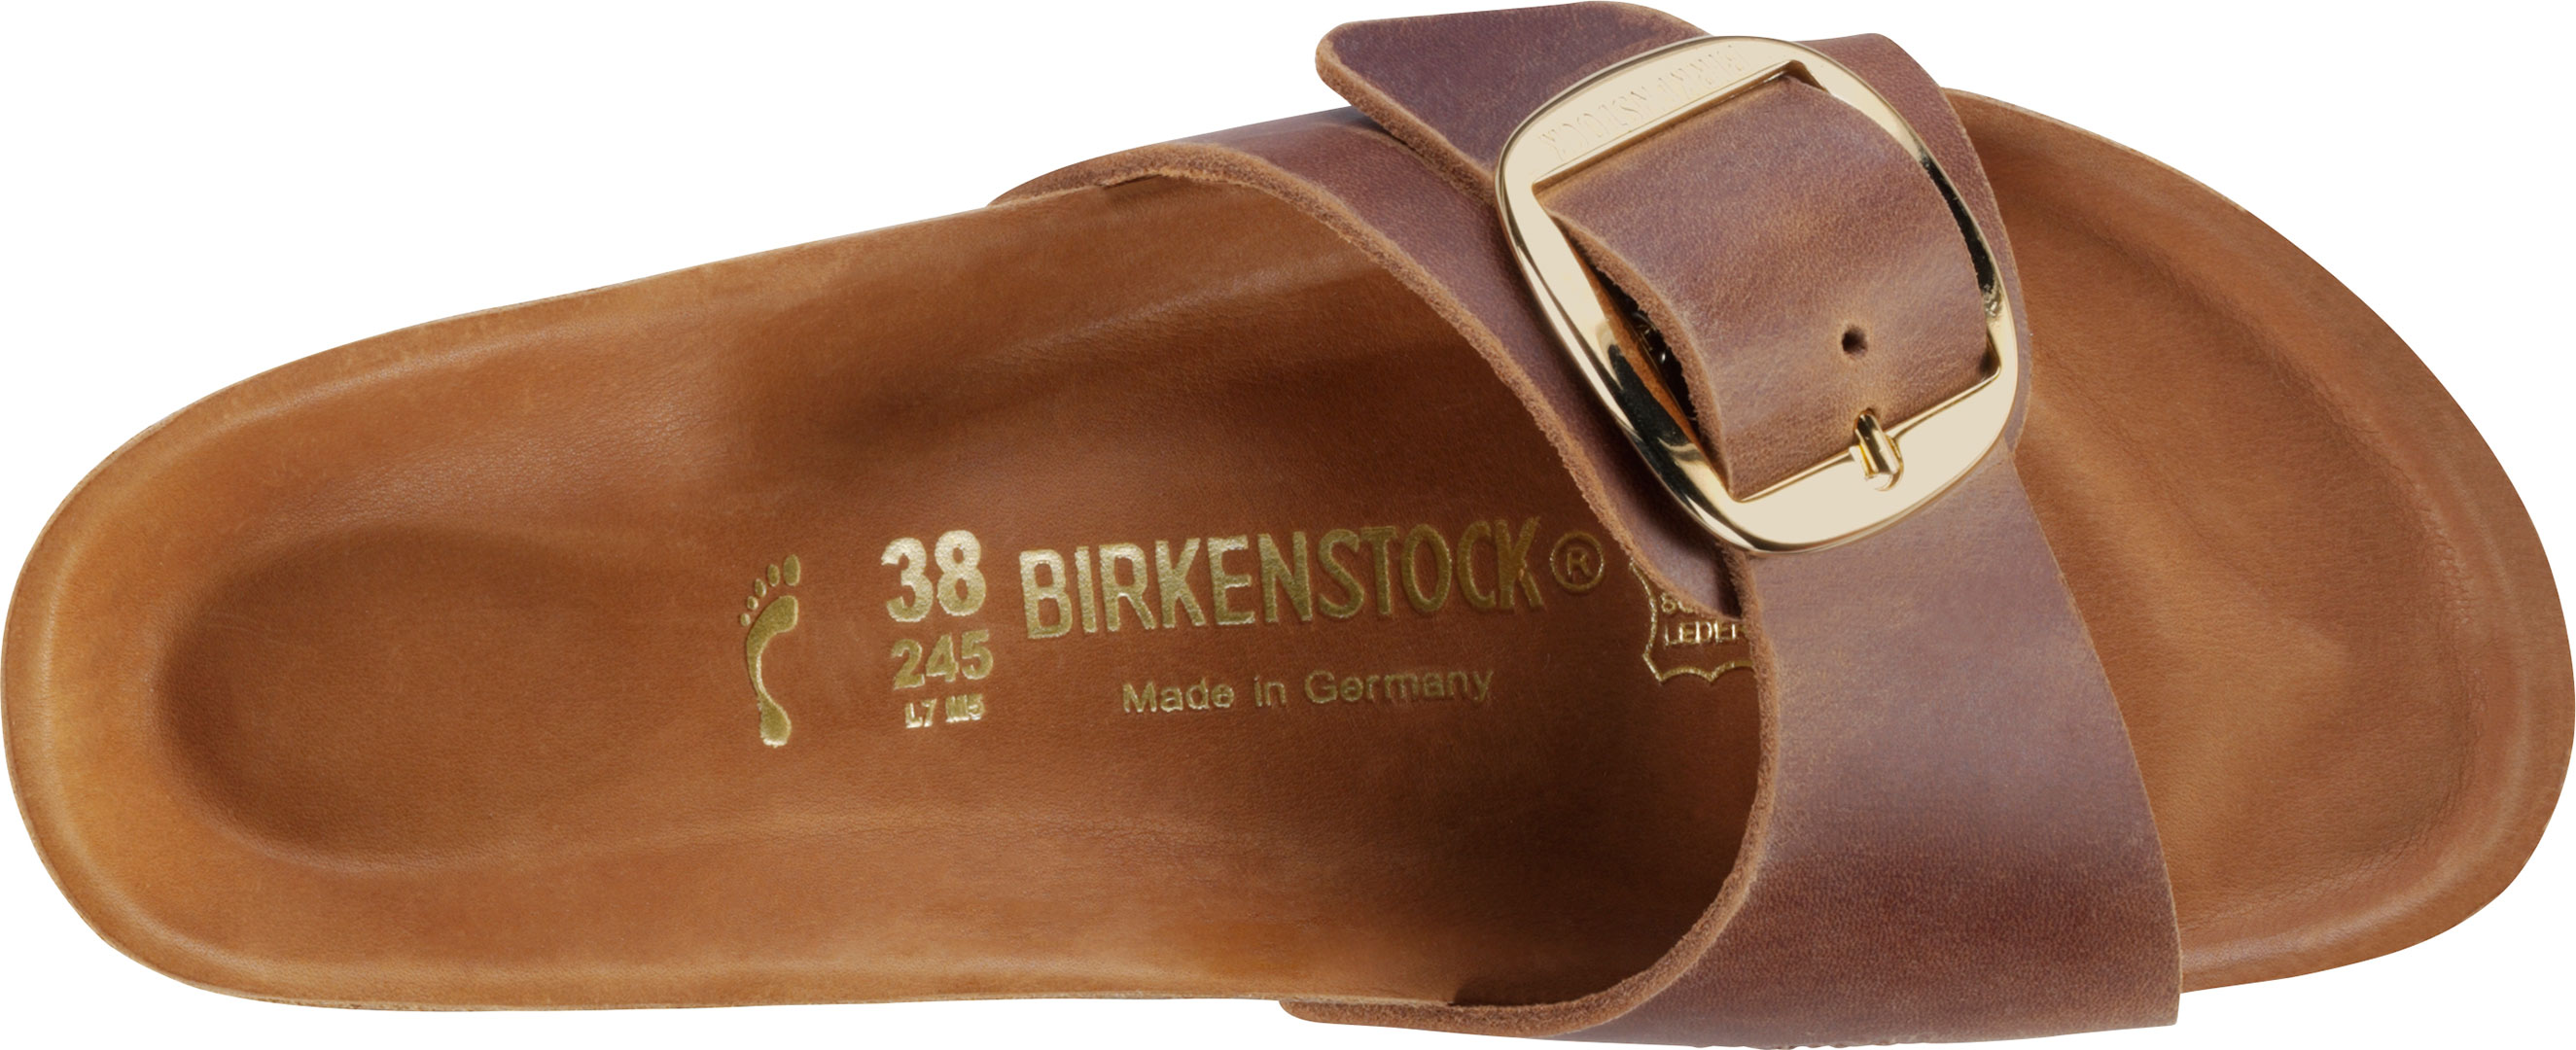 birkenstock madrid big buckle 38